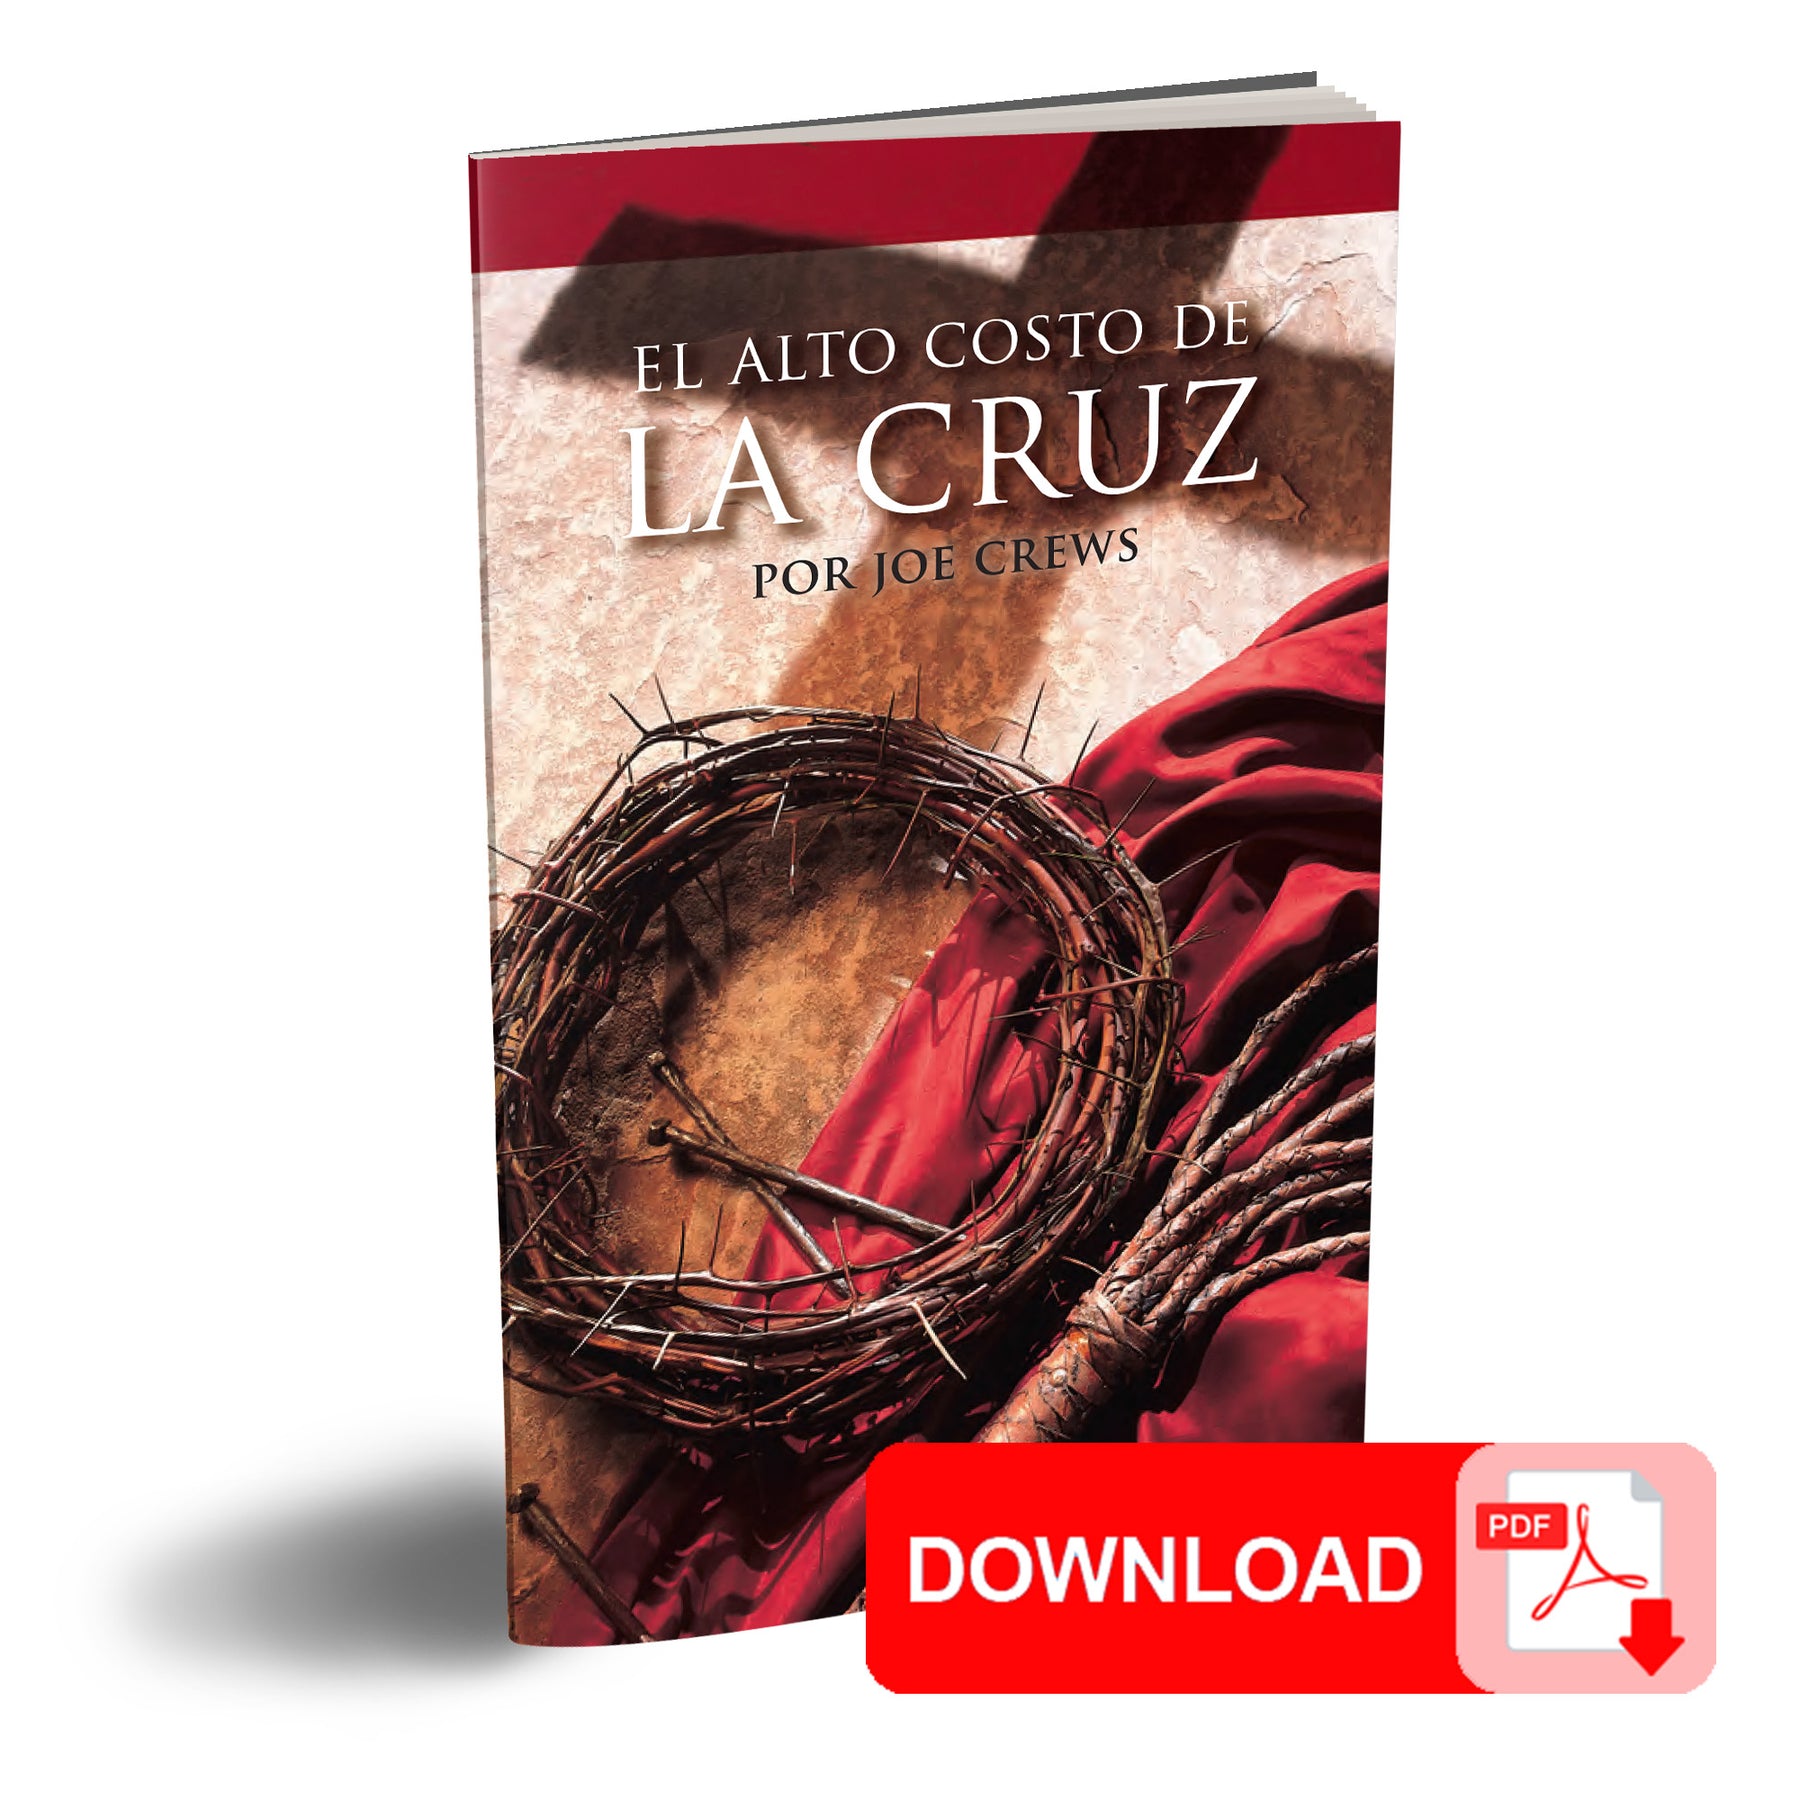 (PDF Download) El Alto Costo de la Cruz por Joe Crews (The High Cost of the Cross Spanish)